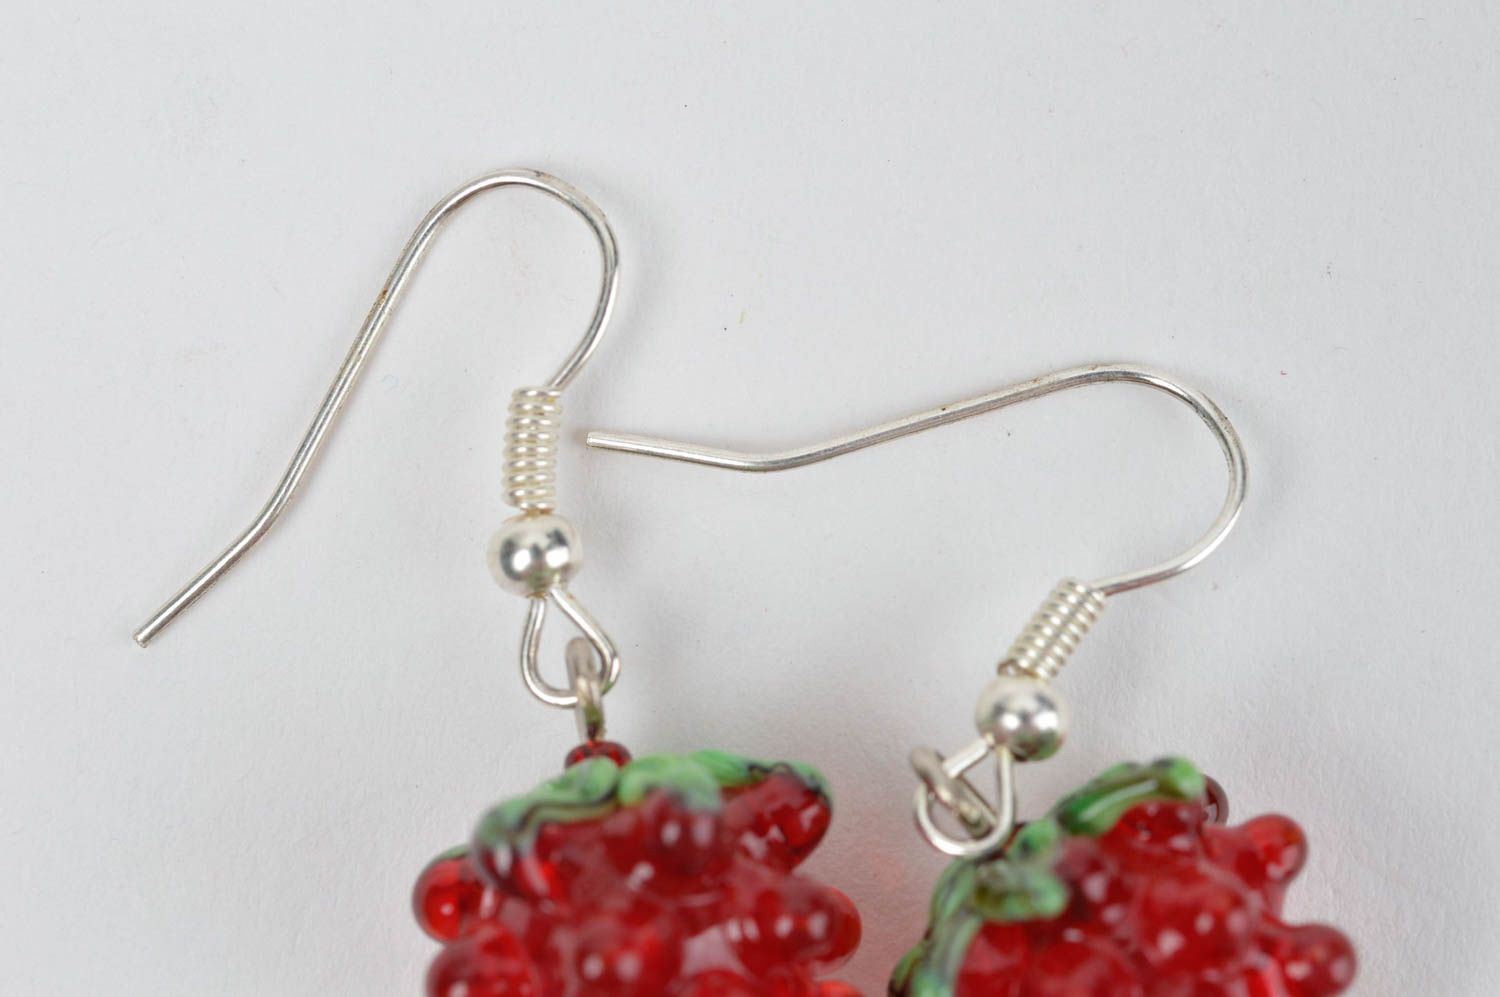 Handmade glass earrings designer accessories for women stylish earrings photo 4